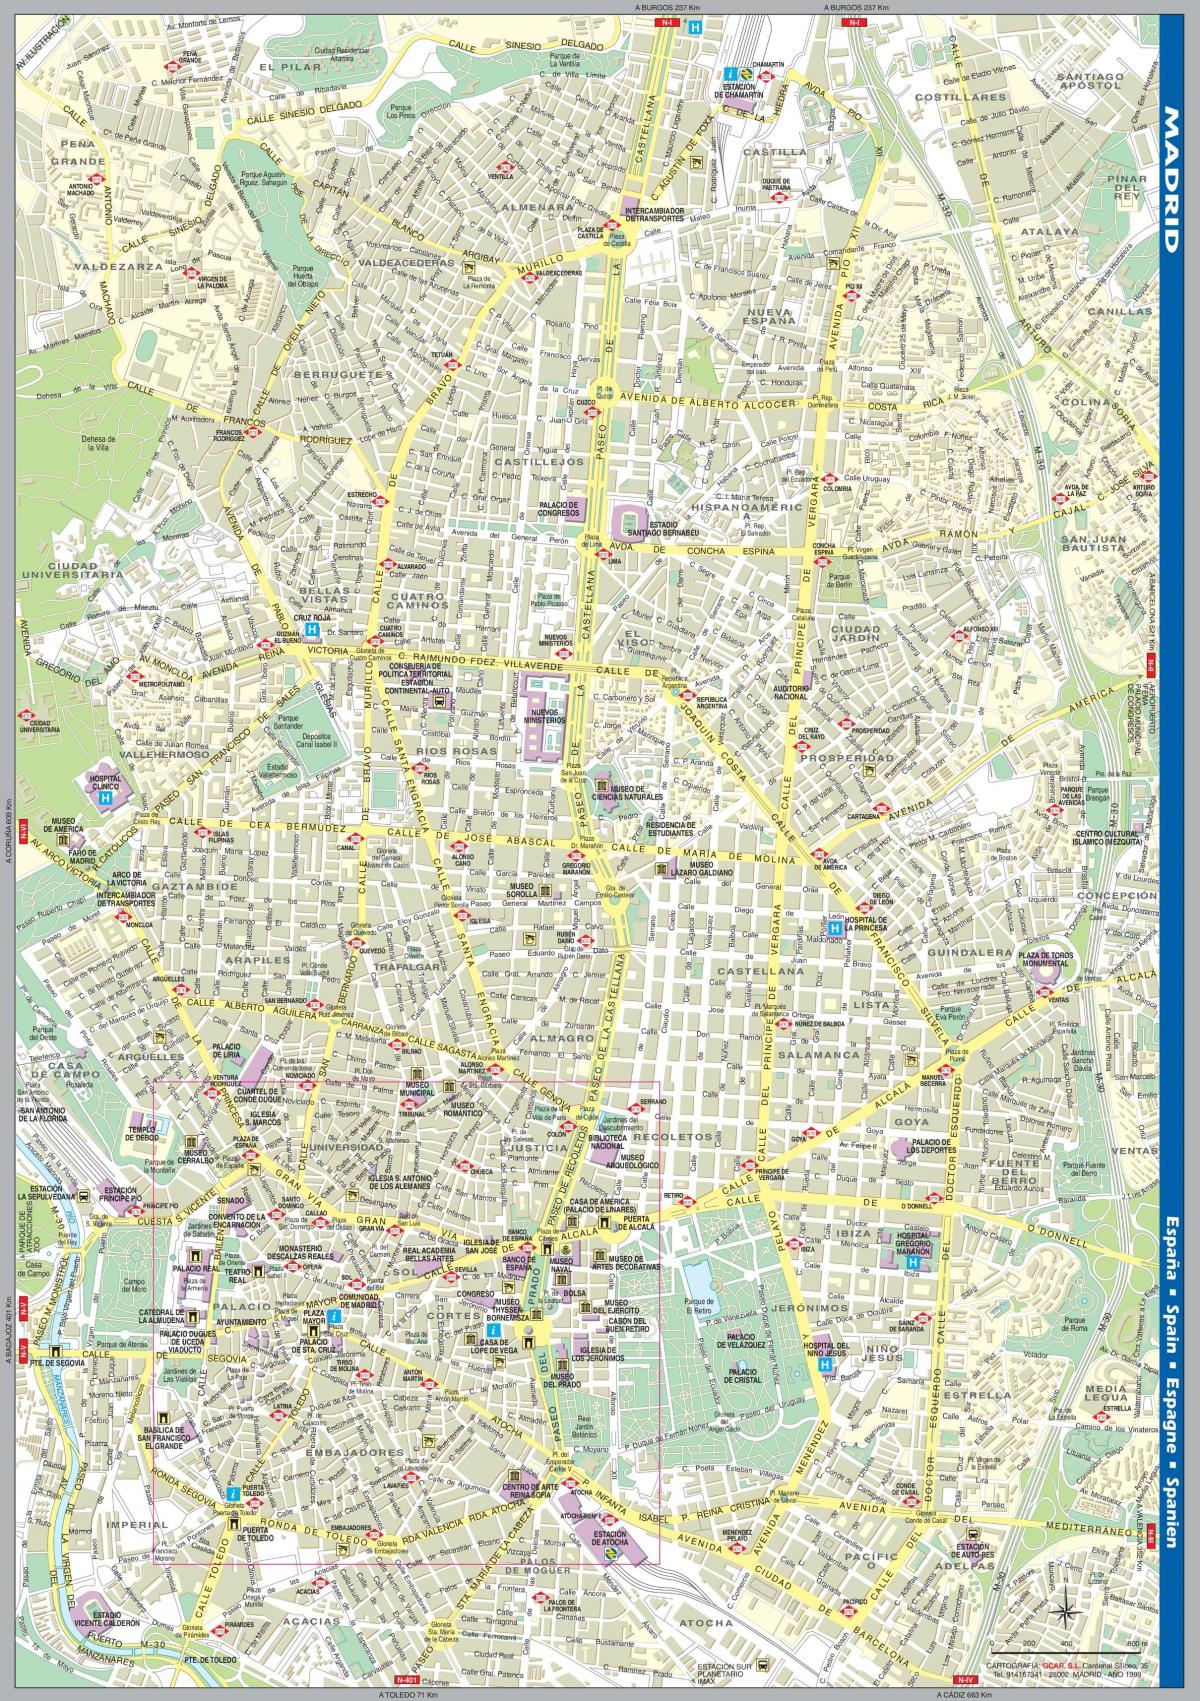 ulična mapa Madridu centar grada